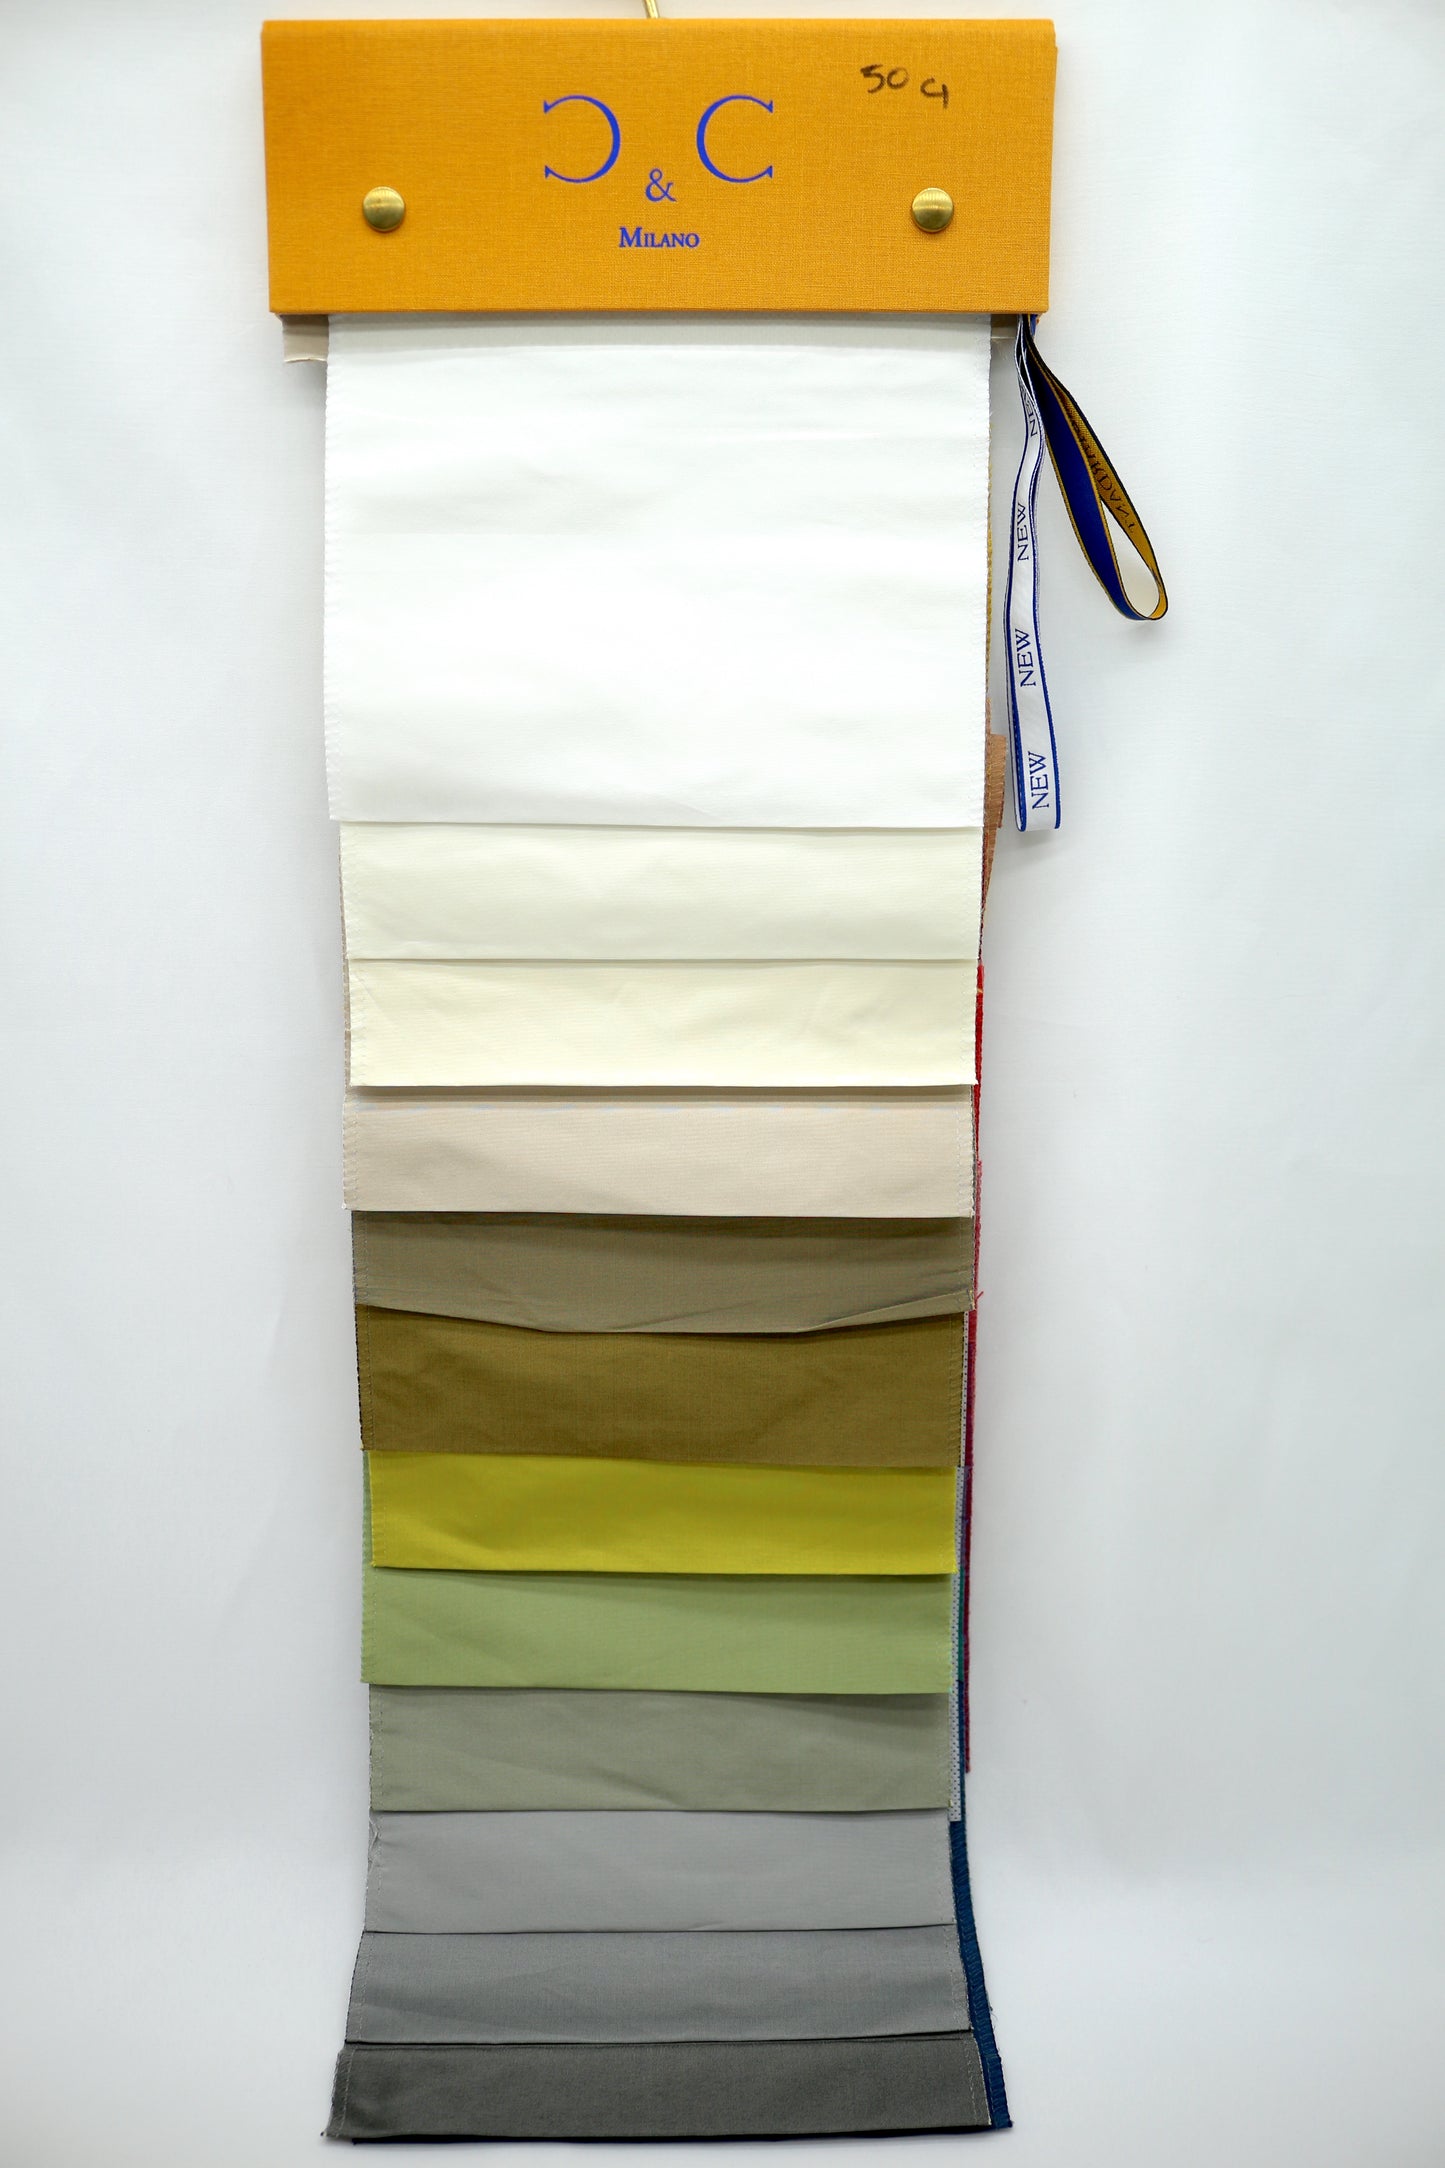 C & C Milano Solids Fabric Showroom Sample